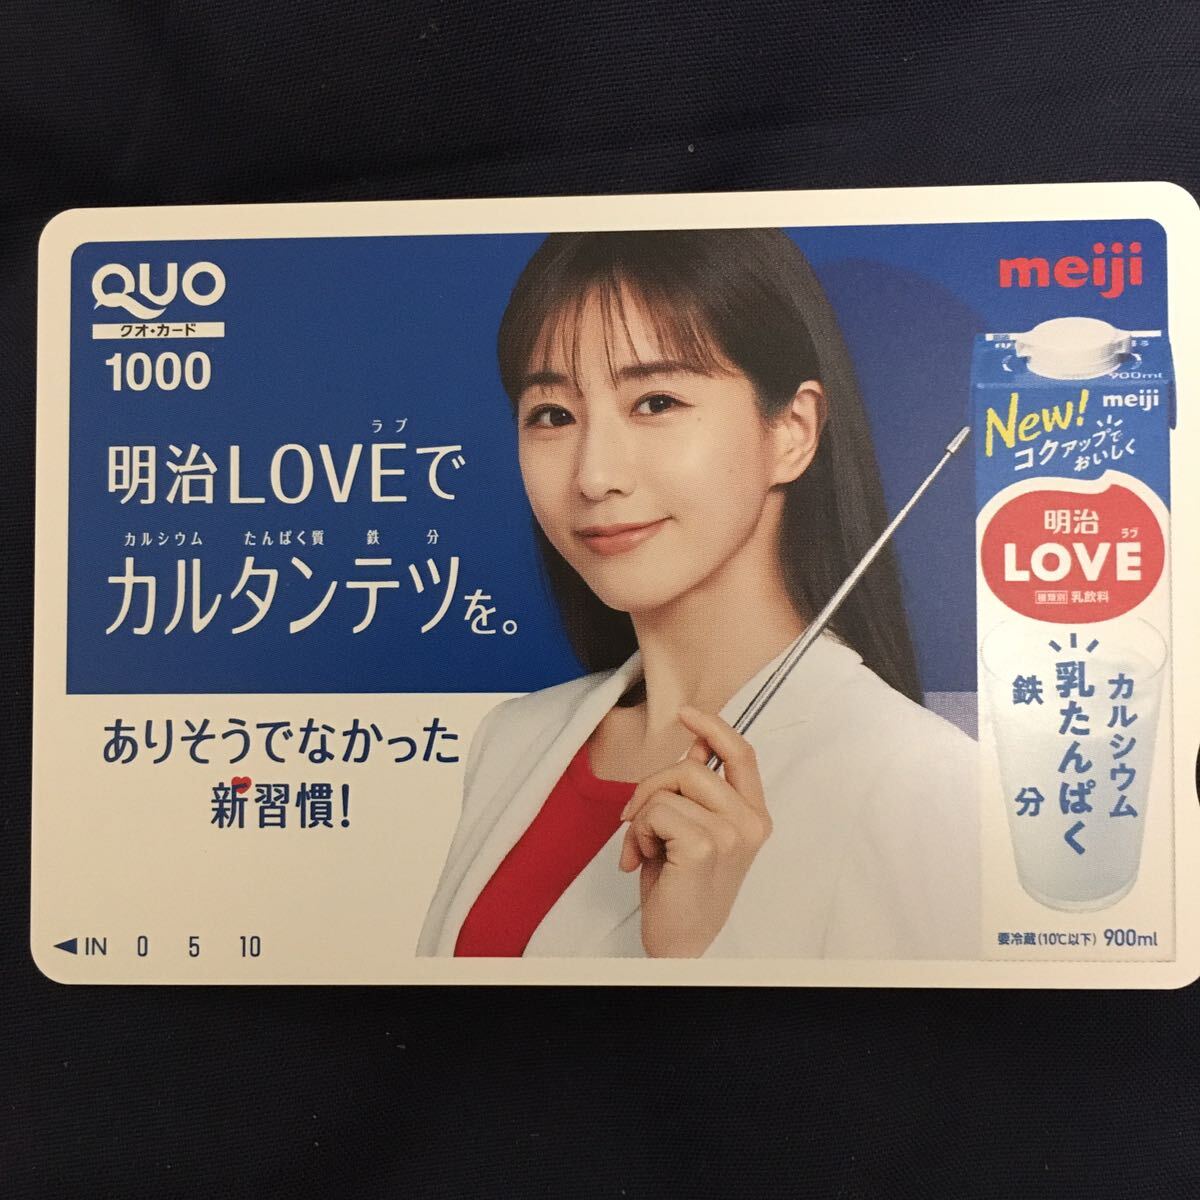  рисовое поле средний .. реальный Meiji LOVE QUO card 1000 телефонная карточка sexy телефонная карточка выставляется 